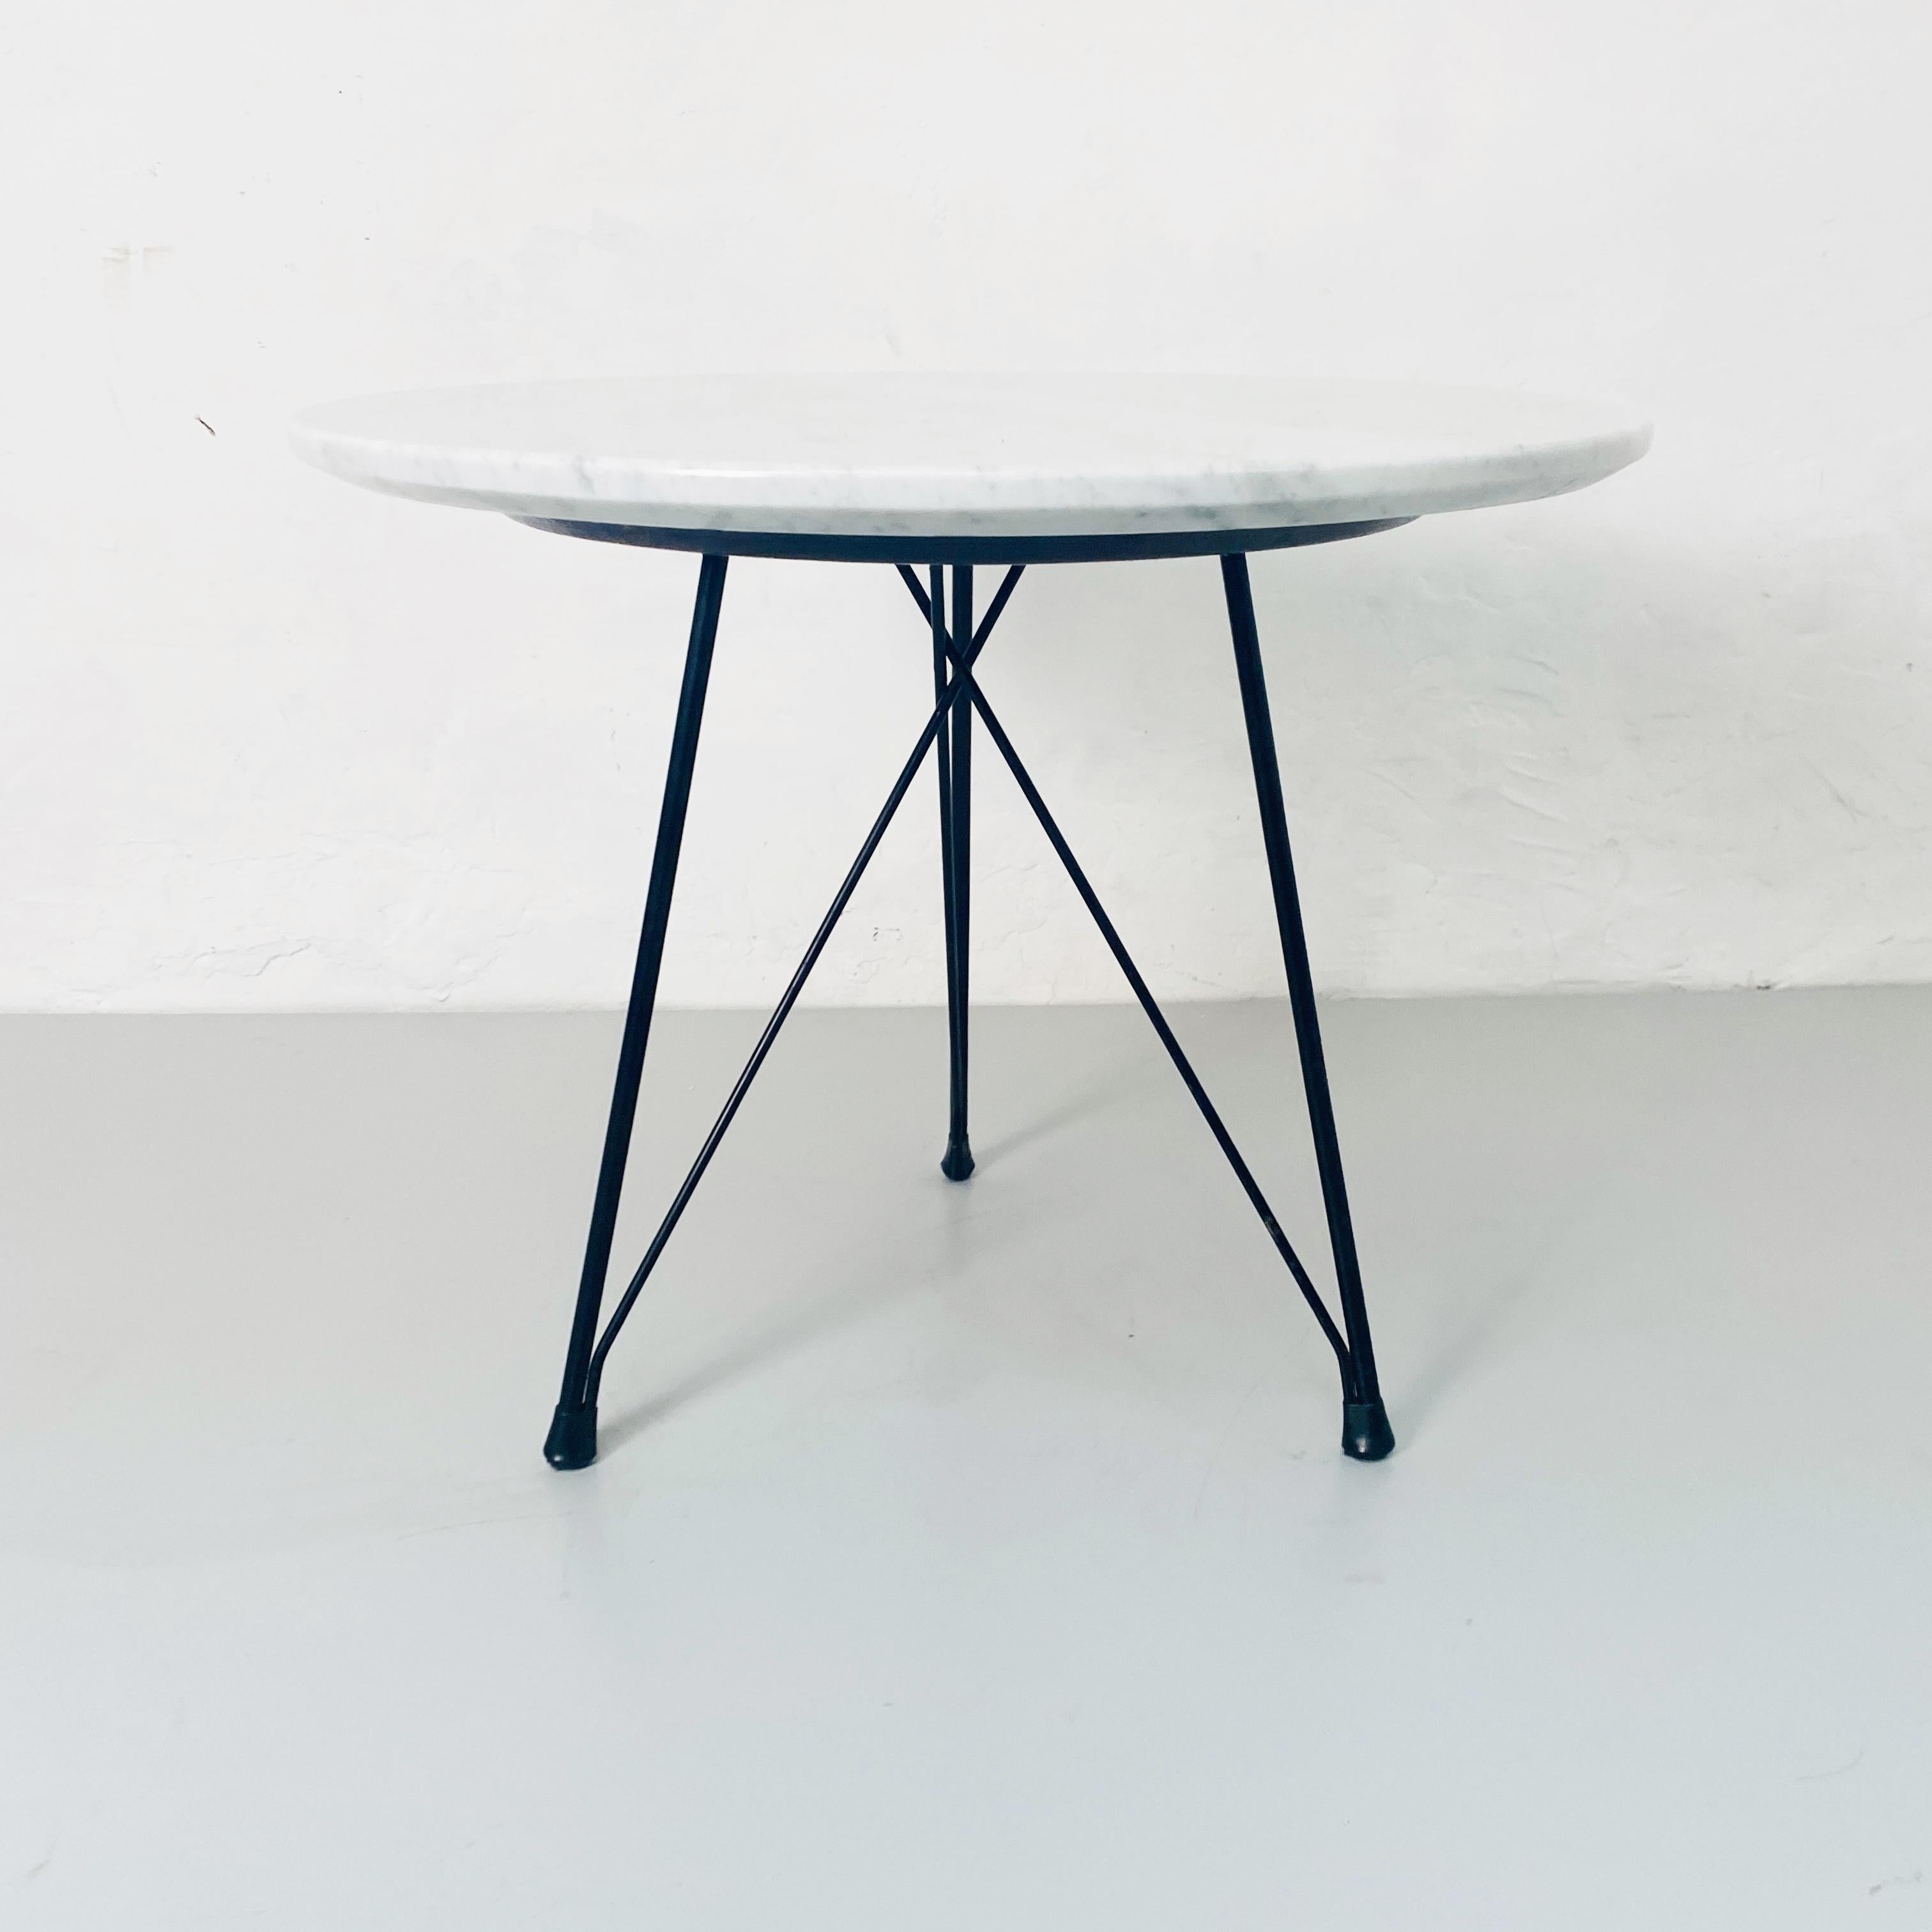 Runder Couchtisch aus Marmor und schwarz emailliertem Metall, 1960er Jahre
schönen kleinen Tisch, perfekt für Wohn-, Bad, Nachttisch Couchtisch, vielseitig, und Eleganz.
Realisiert in den 1950er oder 1960er Jahren mit rundem weißem Carrara-Marmor